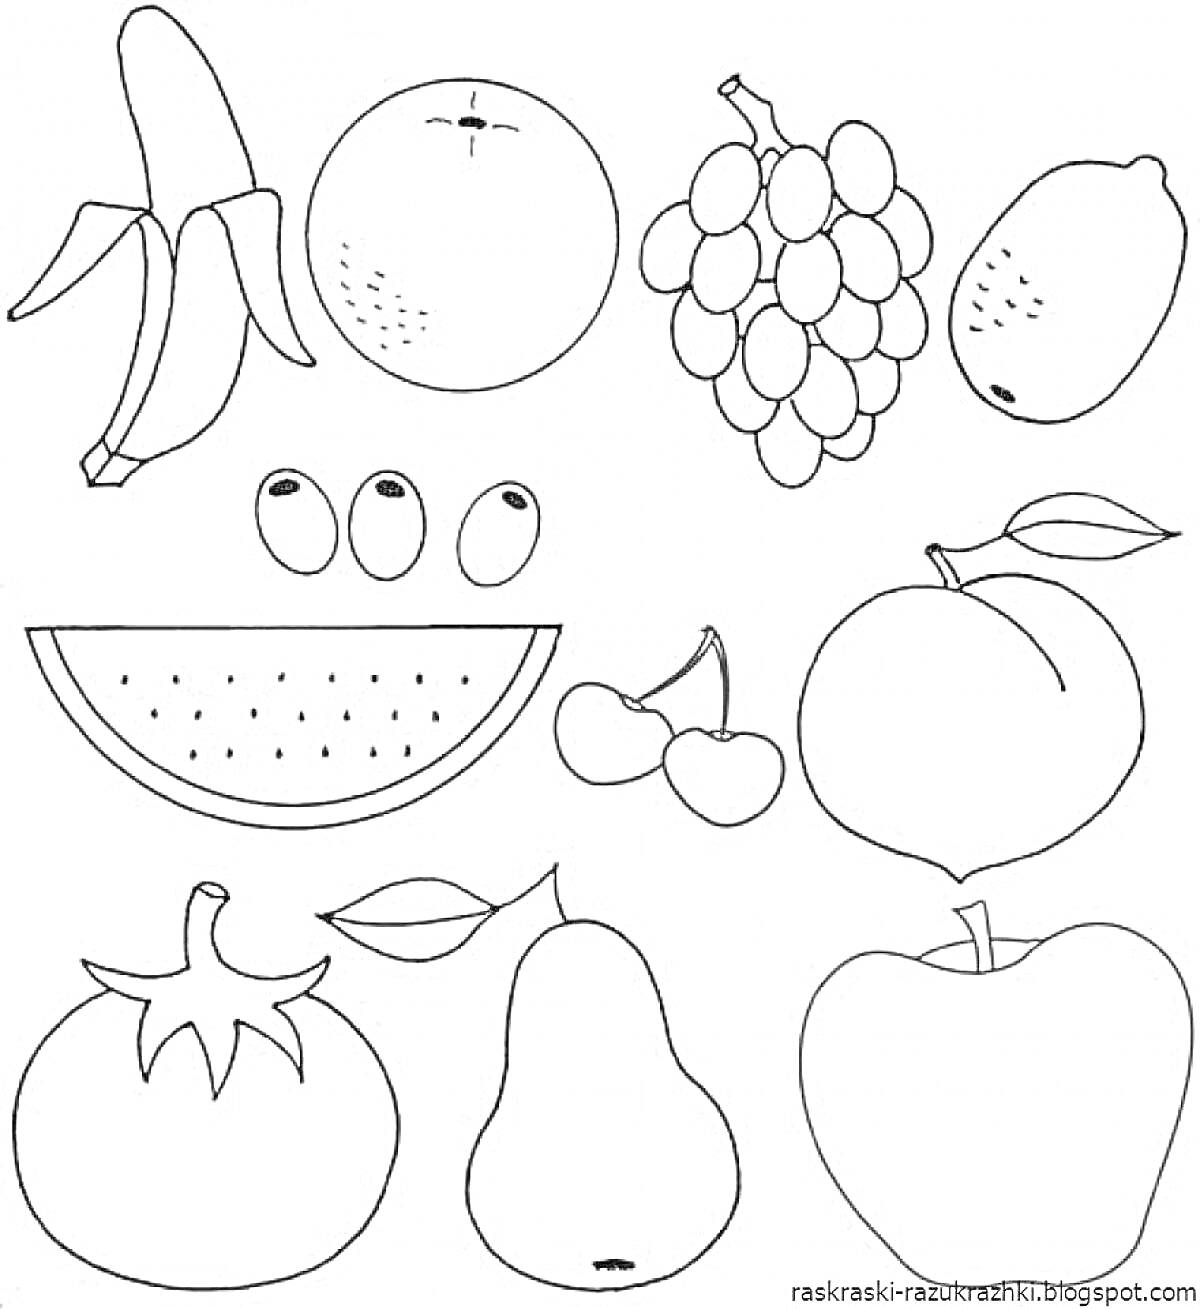 раскраска с фруктами и овощами - банан, апельсин, виноград, манго, три ягоды (возможно, черники), арбуз, две вишенки, персик, помидор, листок, груша, яблоко